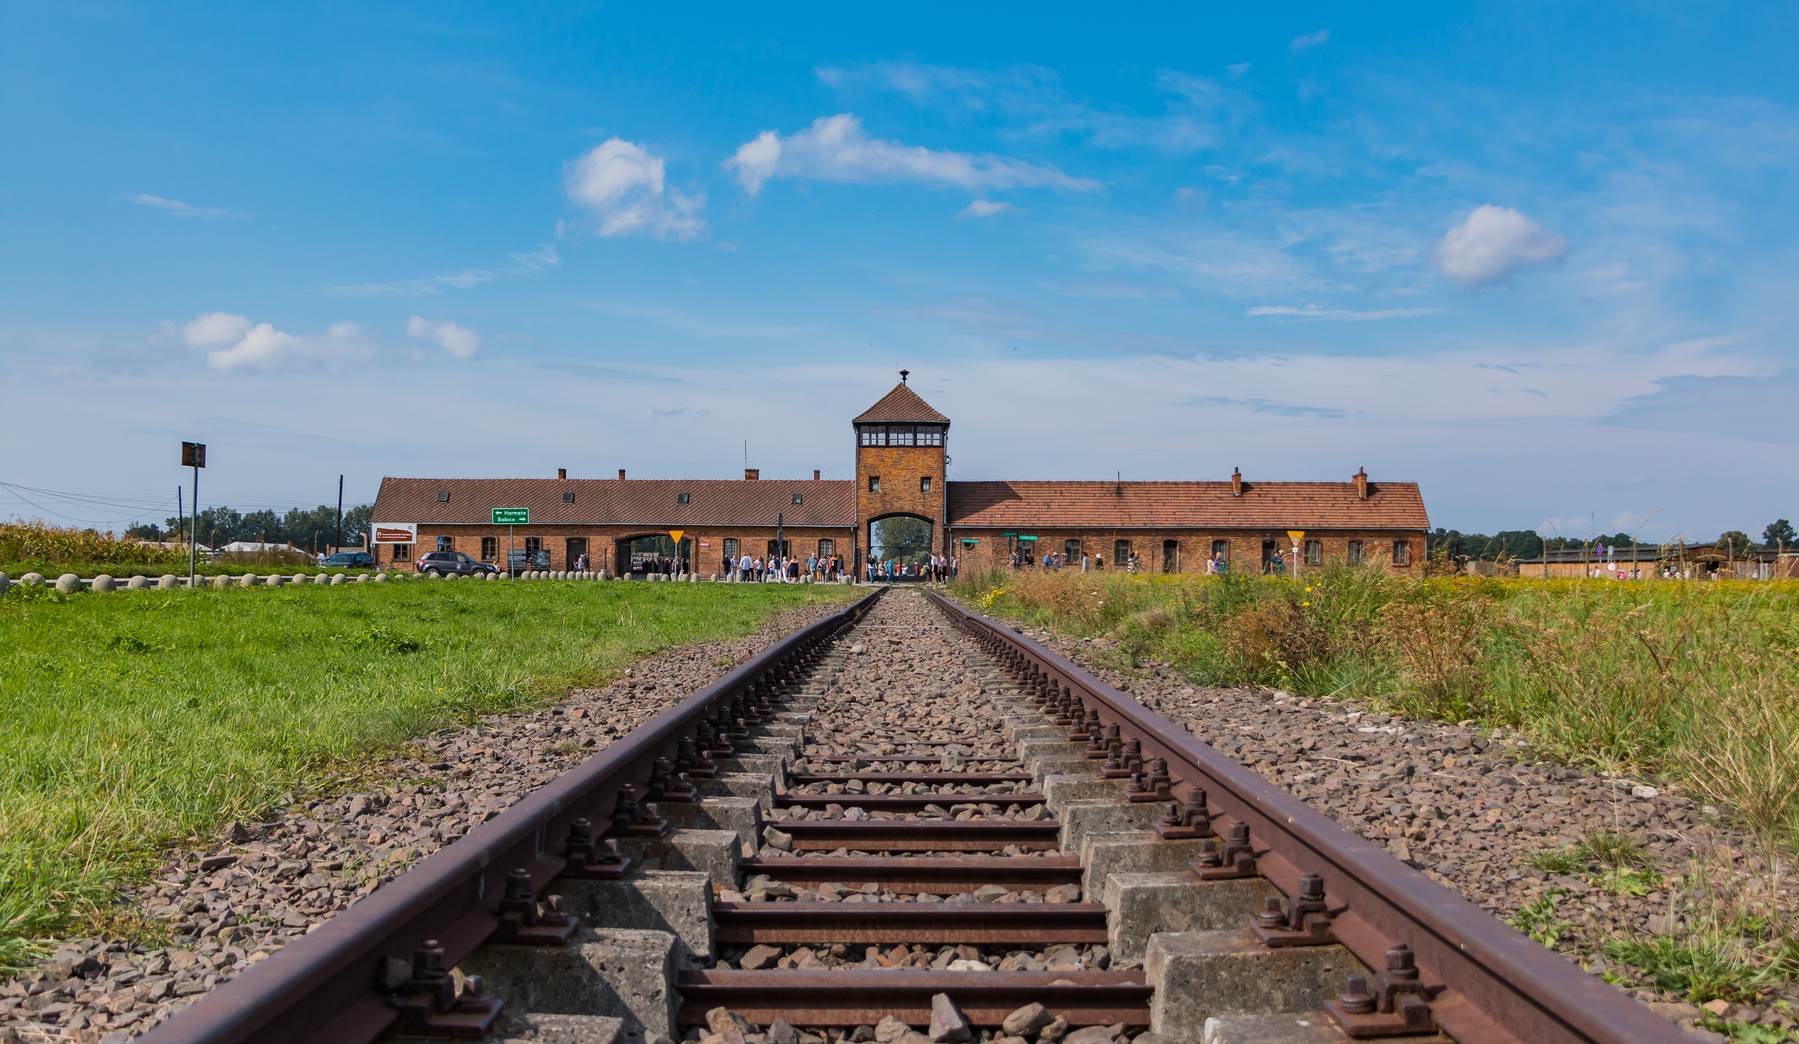  Auschwitz 